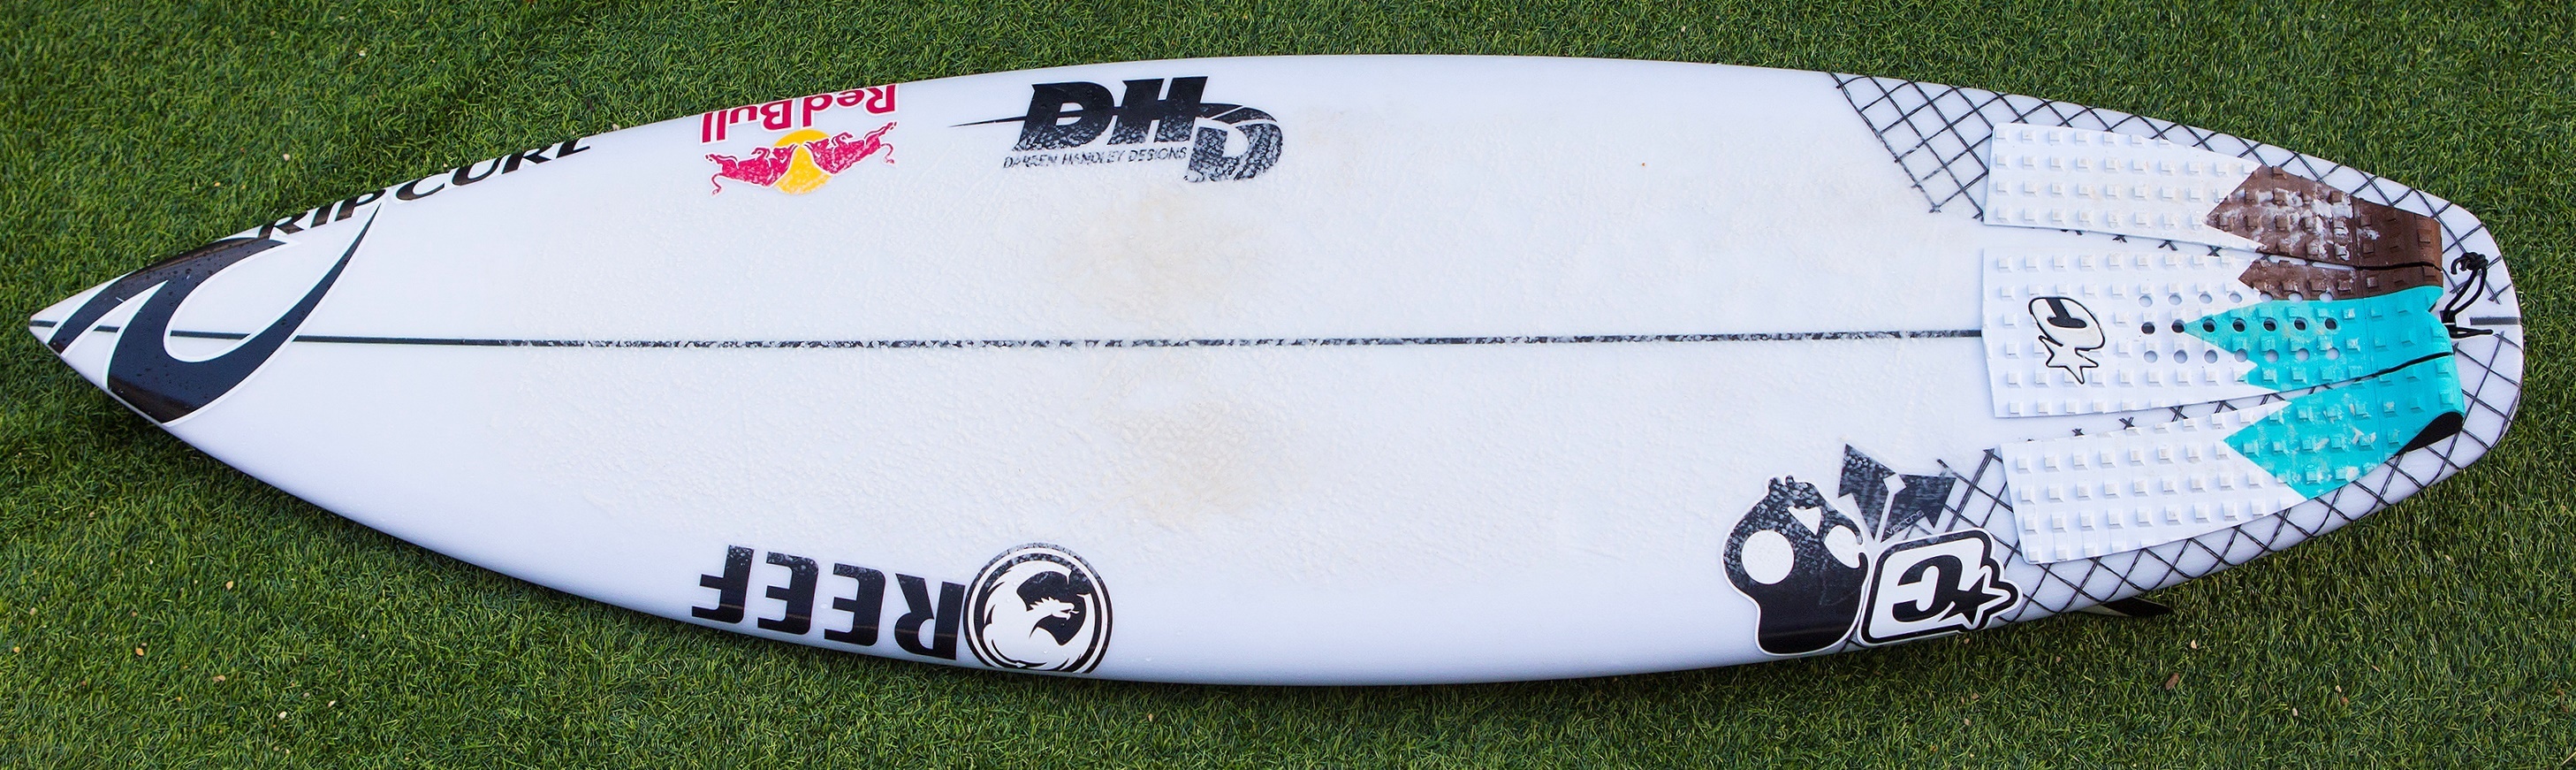 Magic Board: DHD 5'" x ." x 2."   World Surf League